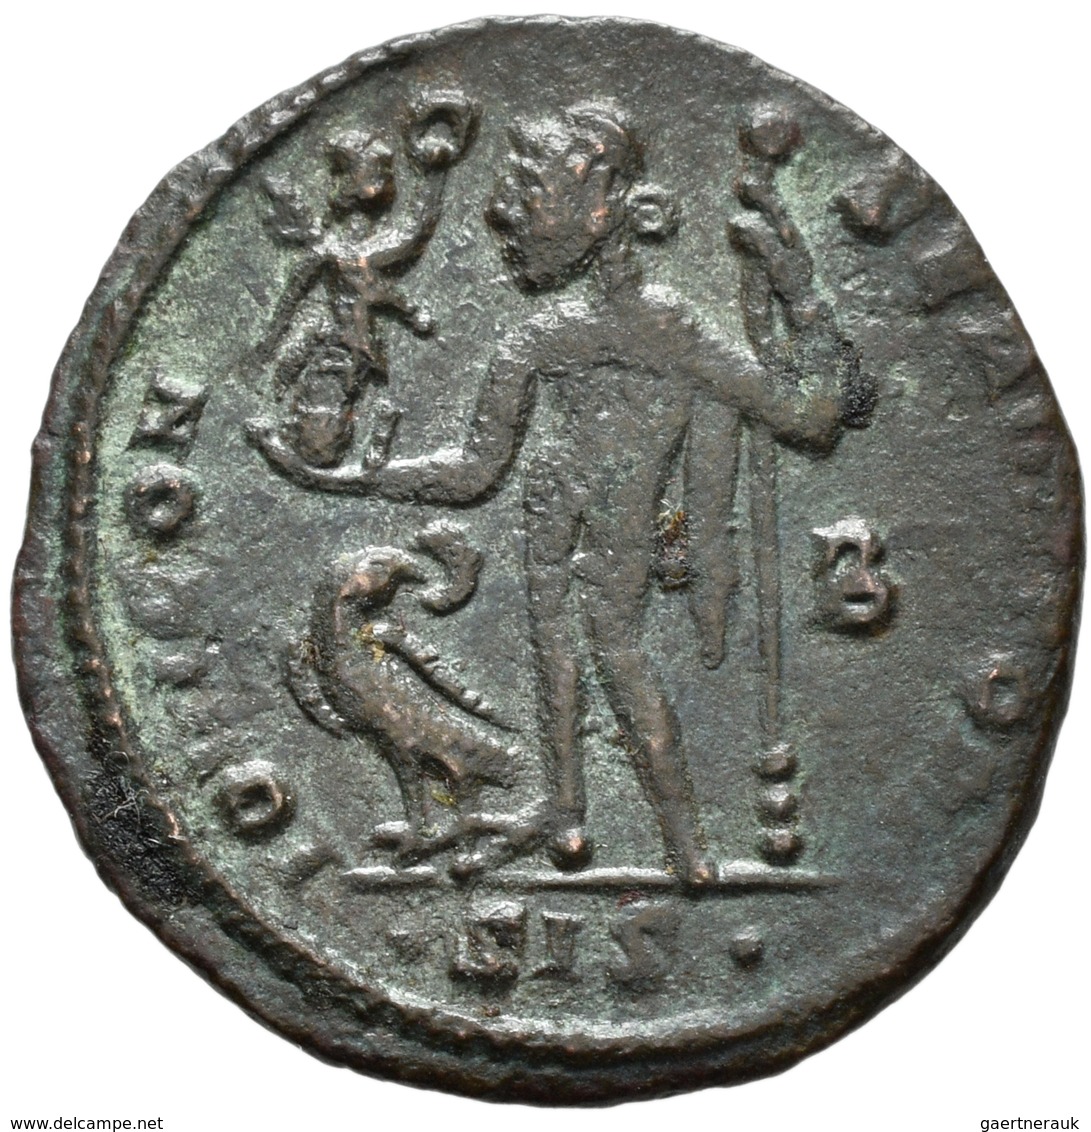 Antike: Römische Kaiserzeit: 54 Bronzemünzen, meist Æ-Follis, diverse Kaiser, unterschiedliche Erhal